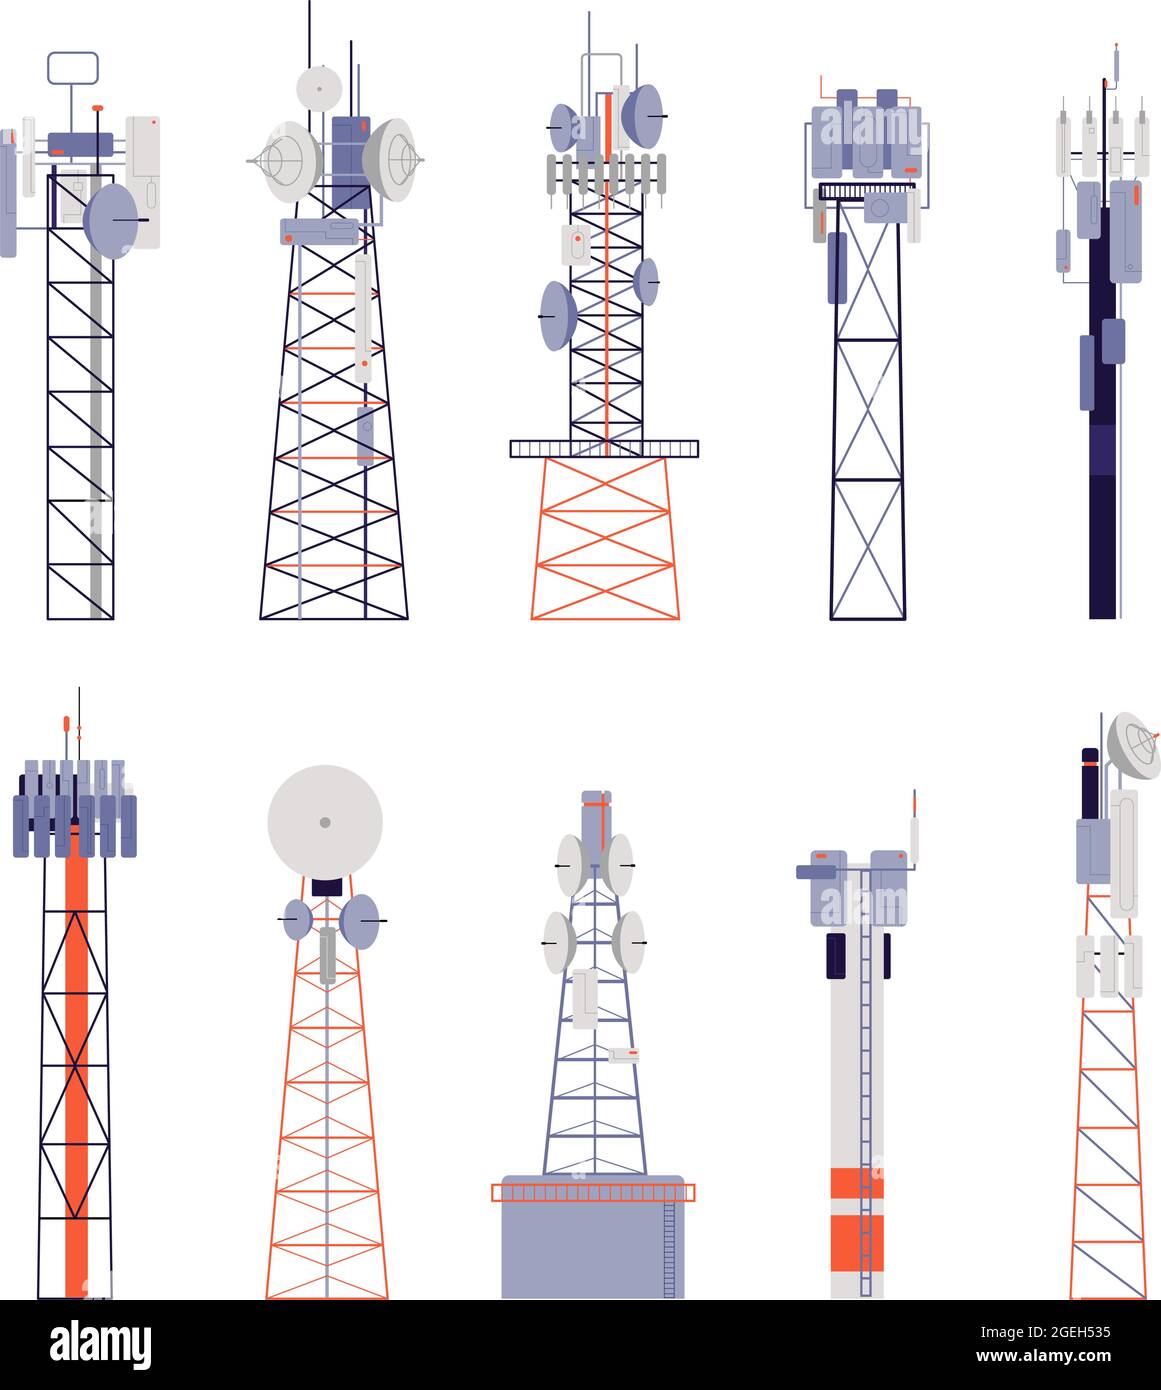 Wireless tower. Comunicazione satellitare, antenna radio isolata o apparecchiatura cellulare. Immagine vettoriale dell'antenna, della stazione di segnale del telefono Illustrazione Vettoriale